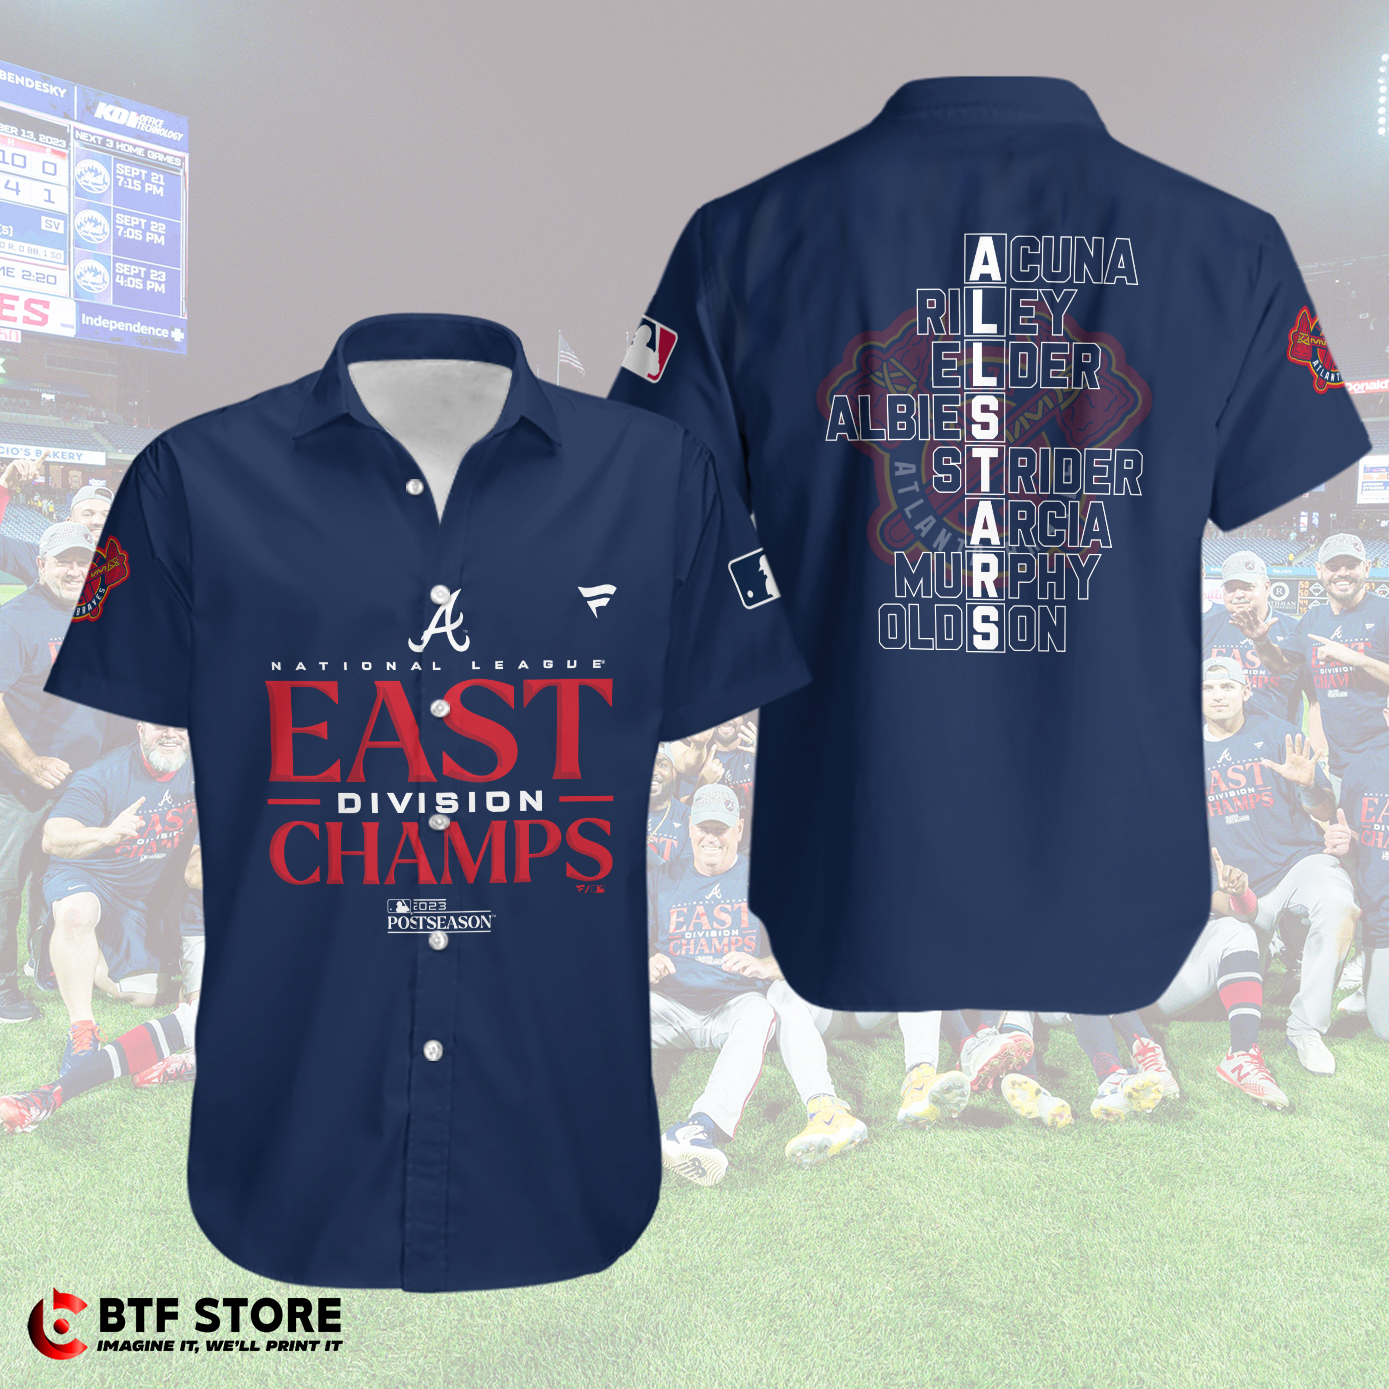 Atlanta Braves 23x Division Champions Hoodie/Sweatshirt/Tshirt